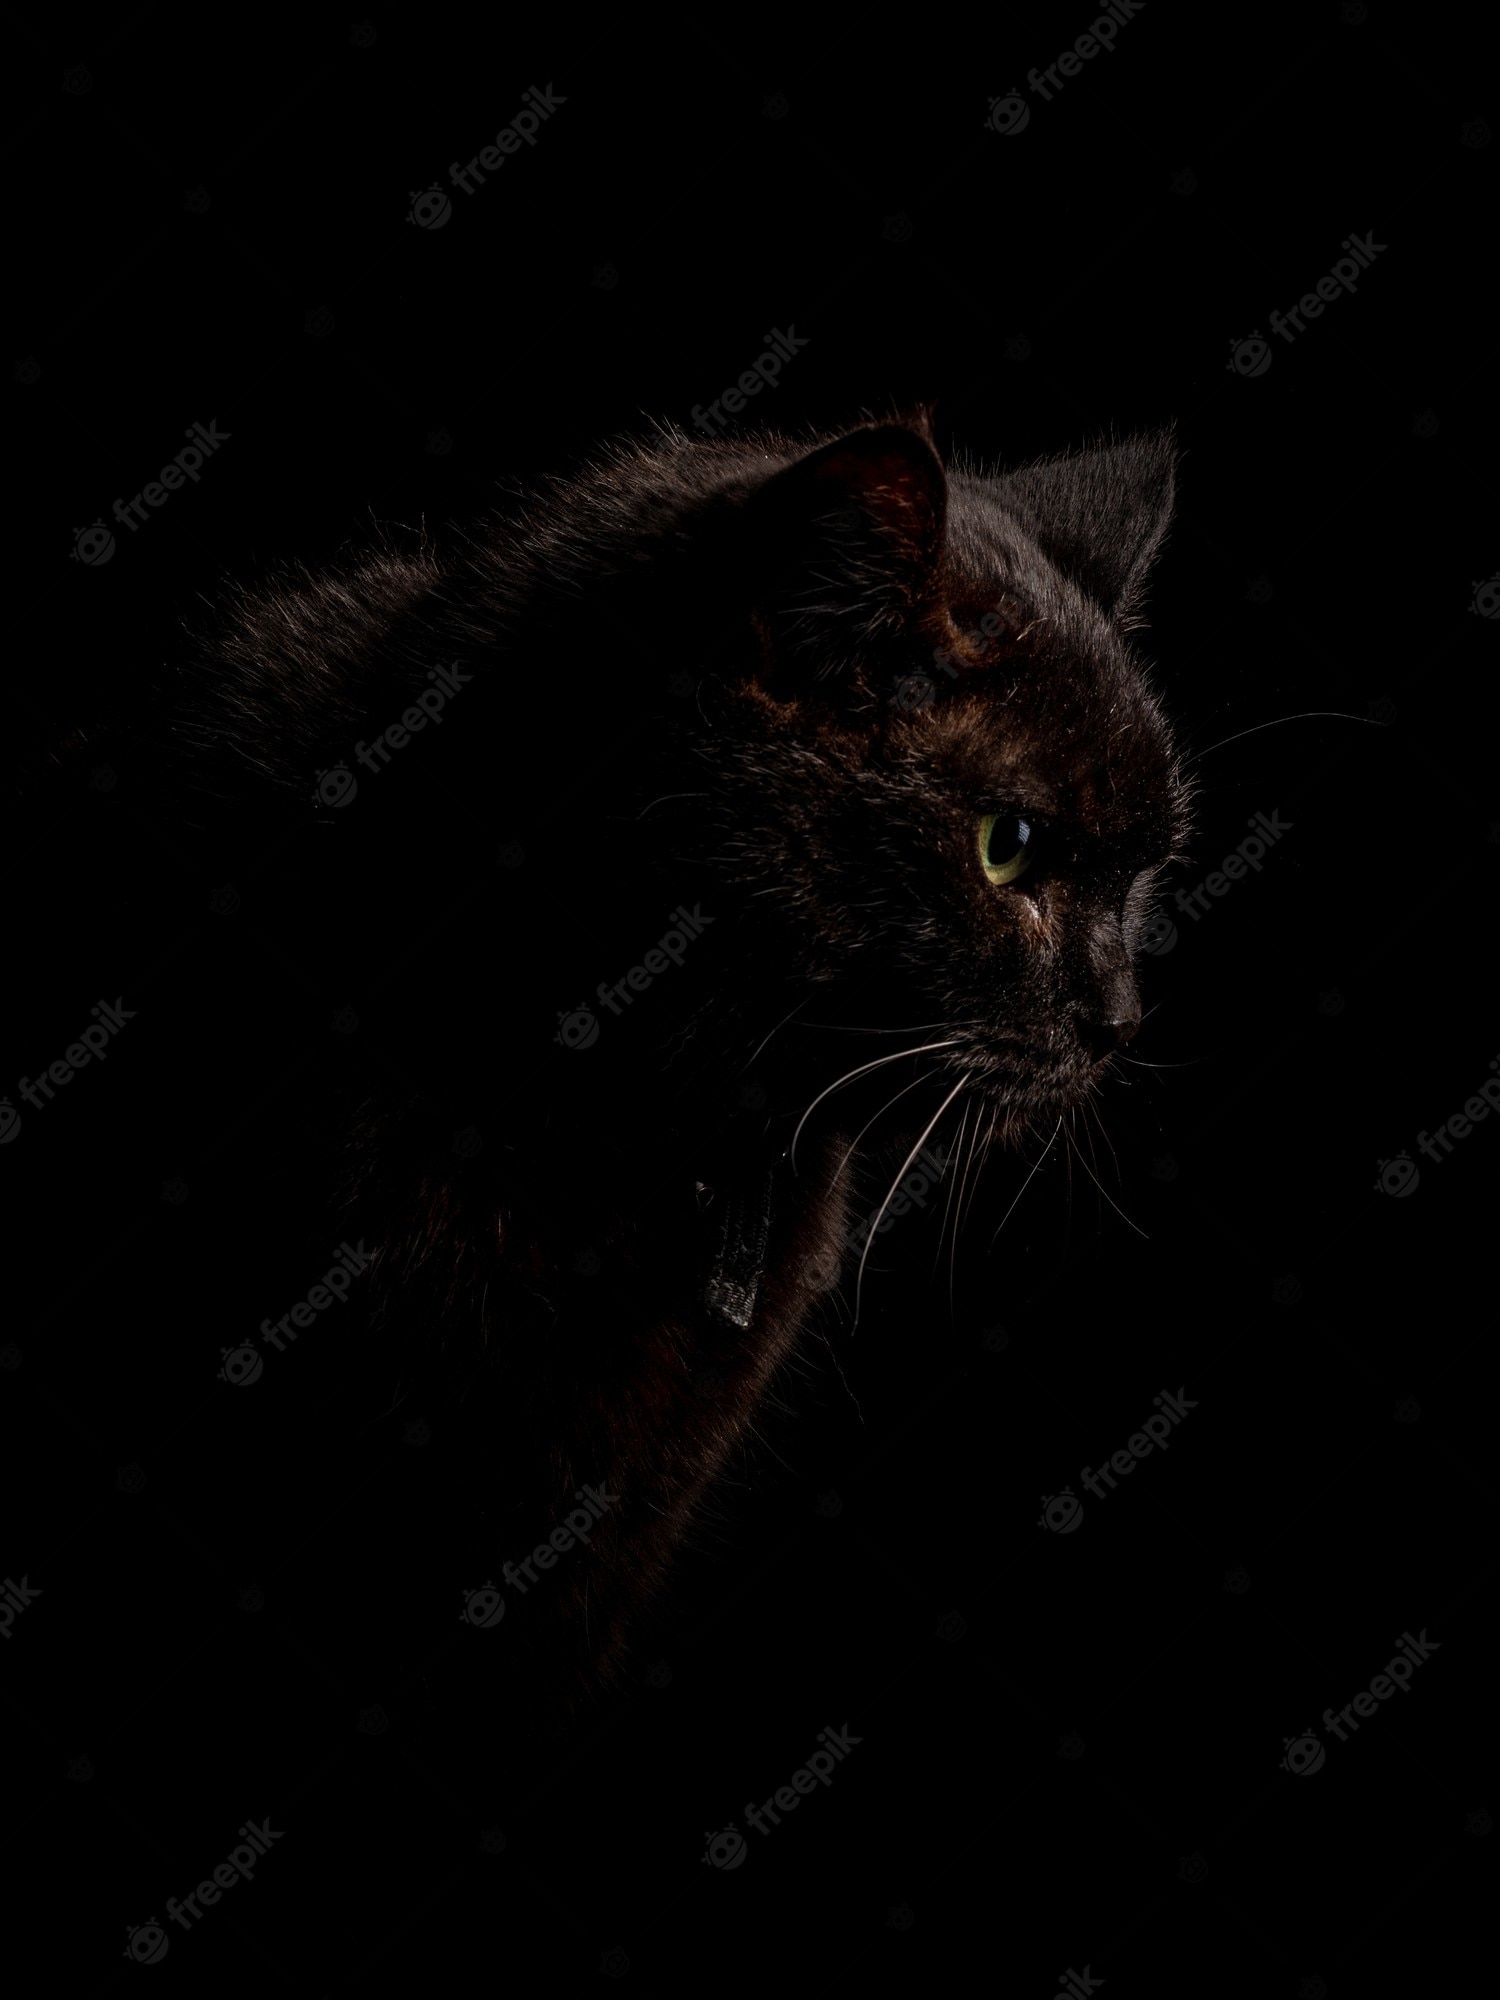 Black Cat Wallpaper Image